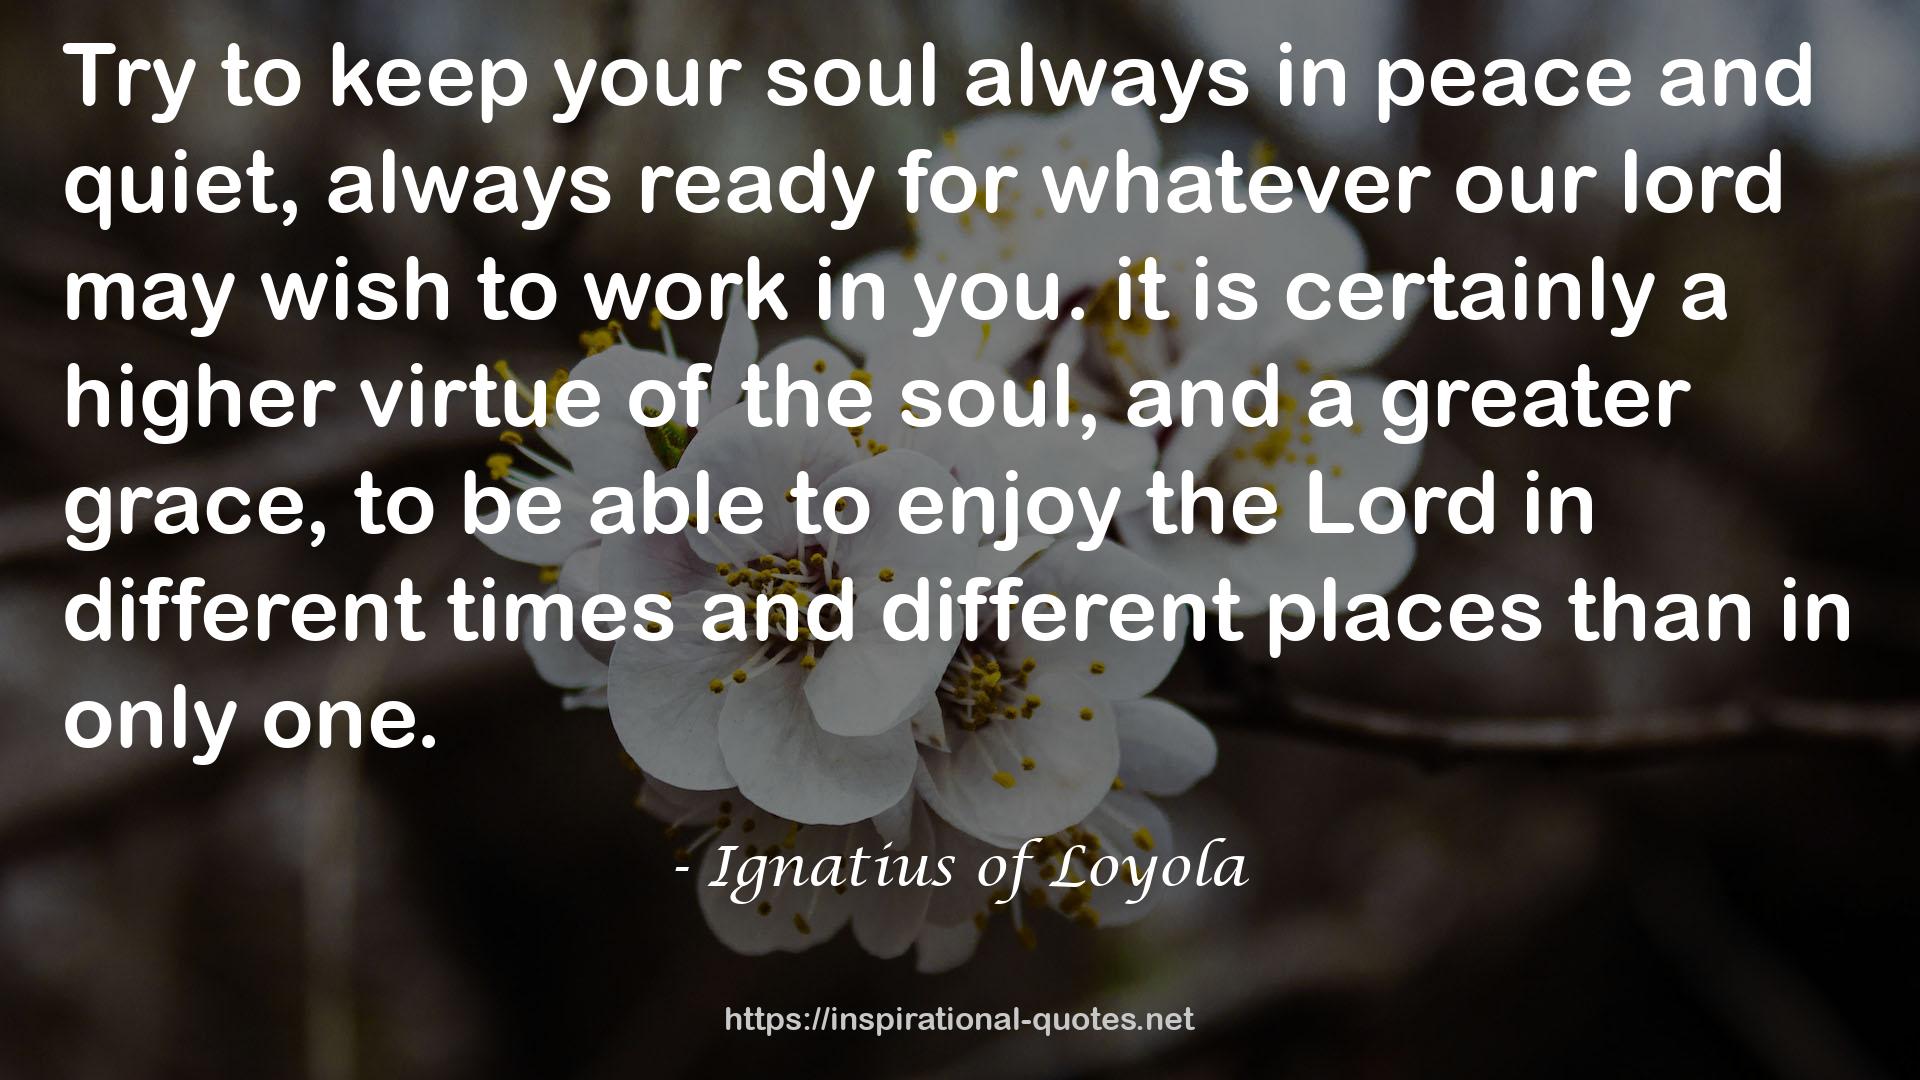 Ignatius of Loyola QUOTES